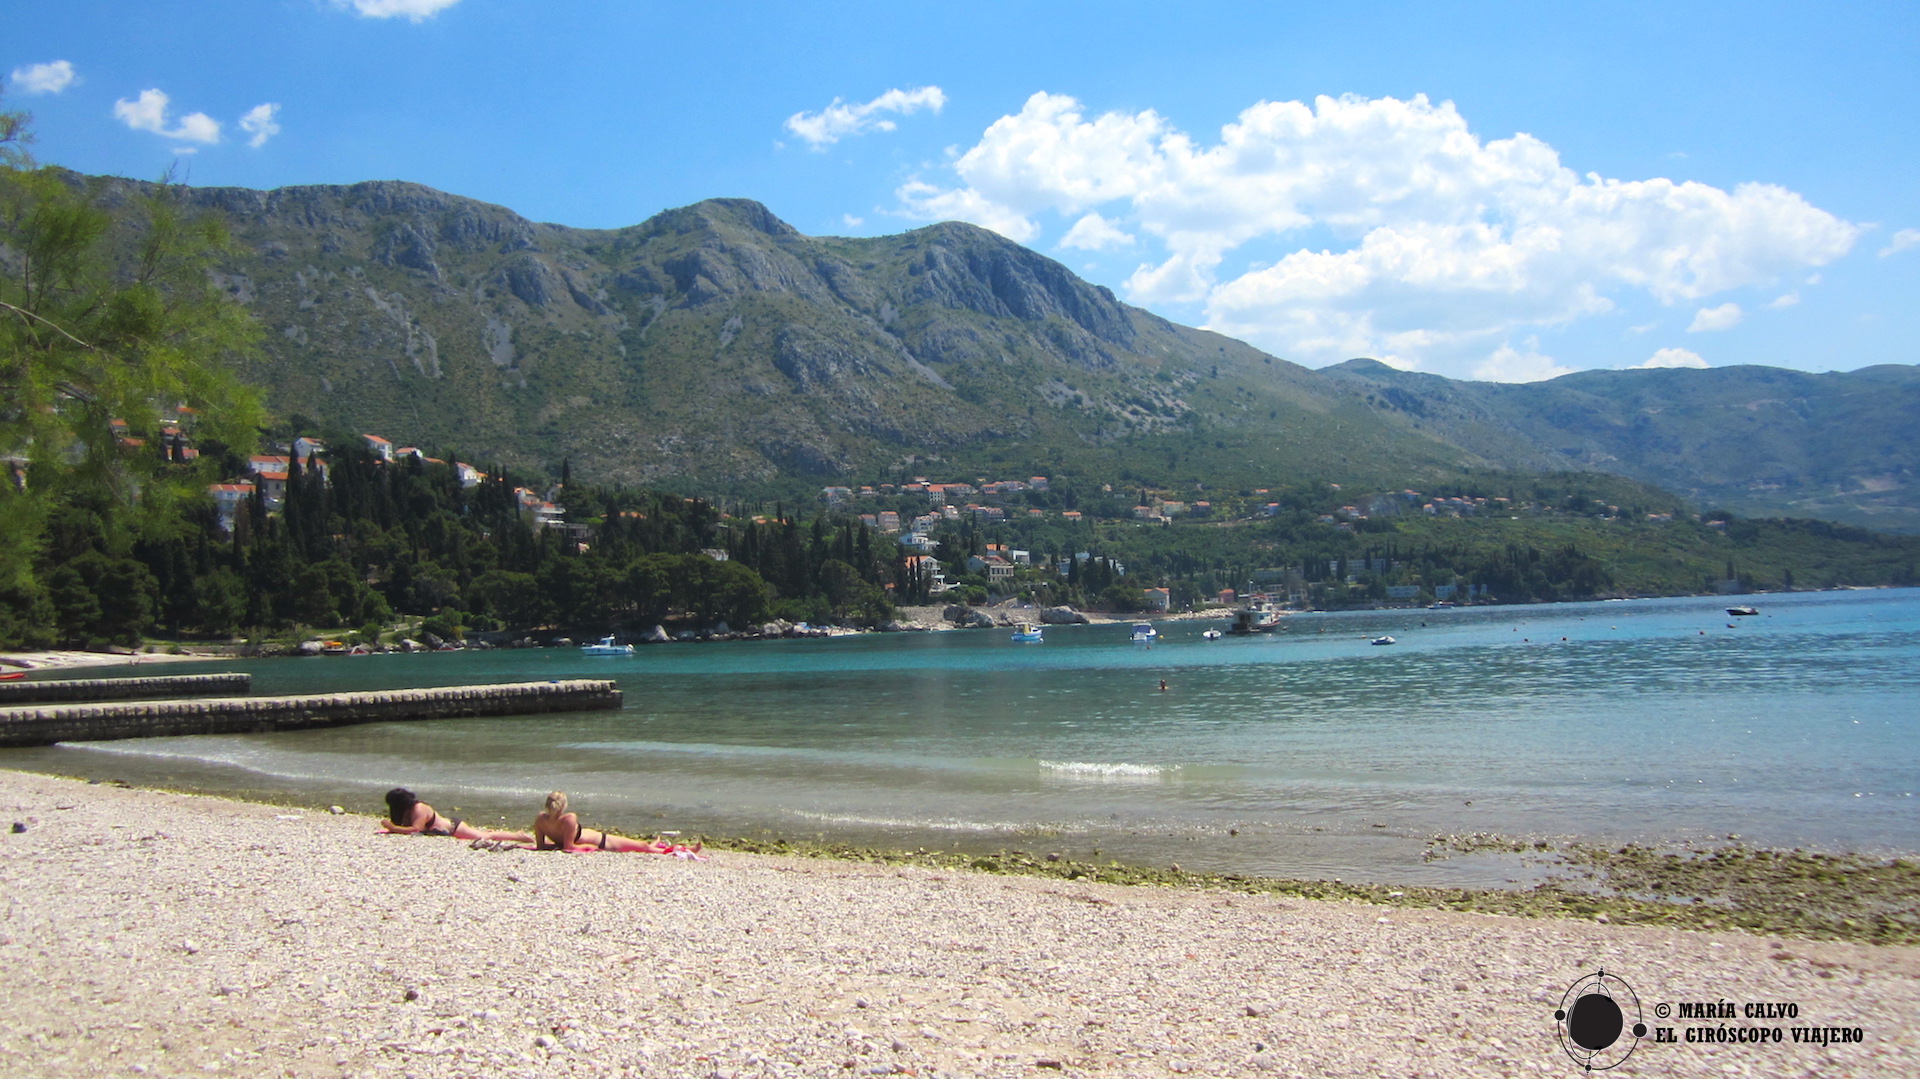 Plage de Srebeno, tout près de Dubrovnik. Magnifiques vues de l'arrière-pays